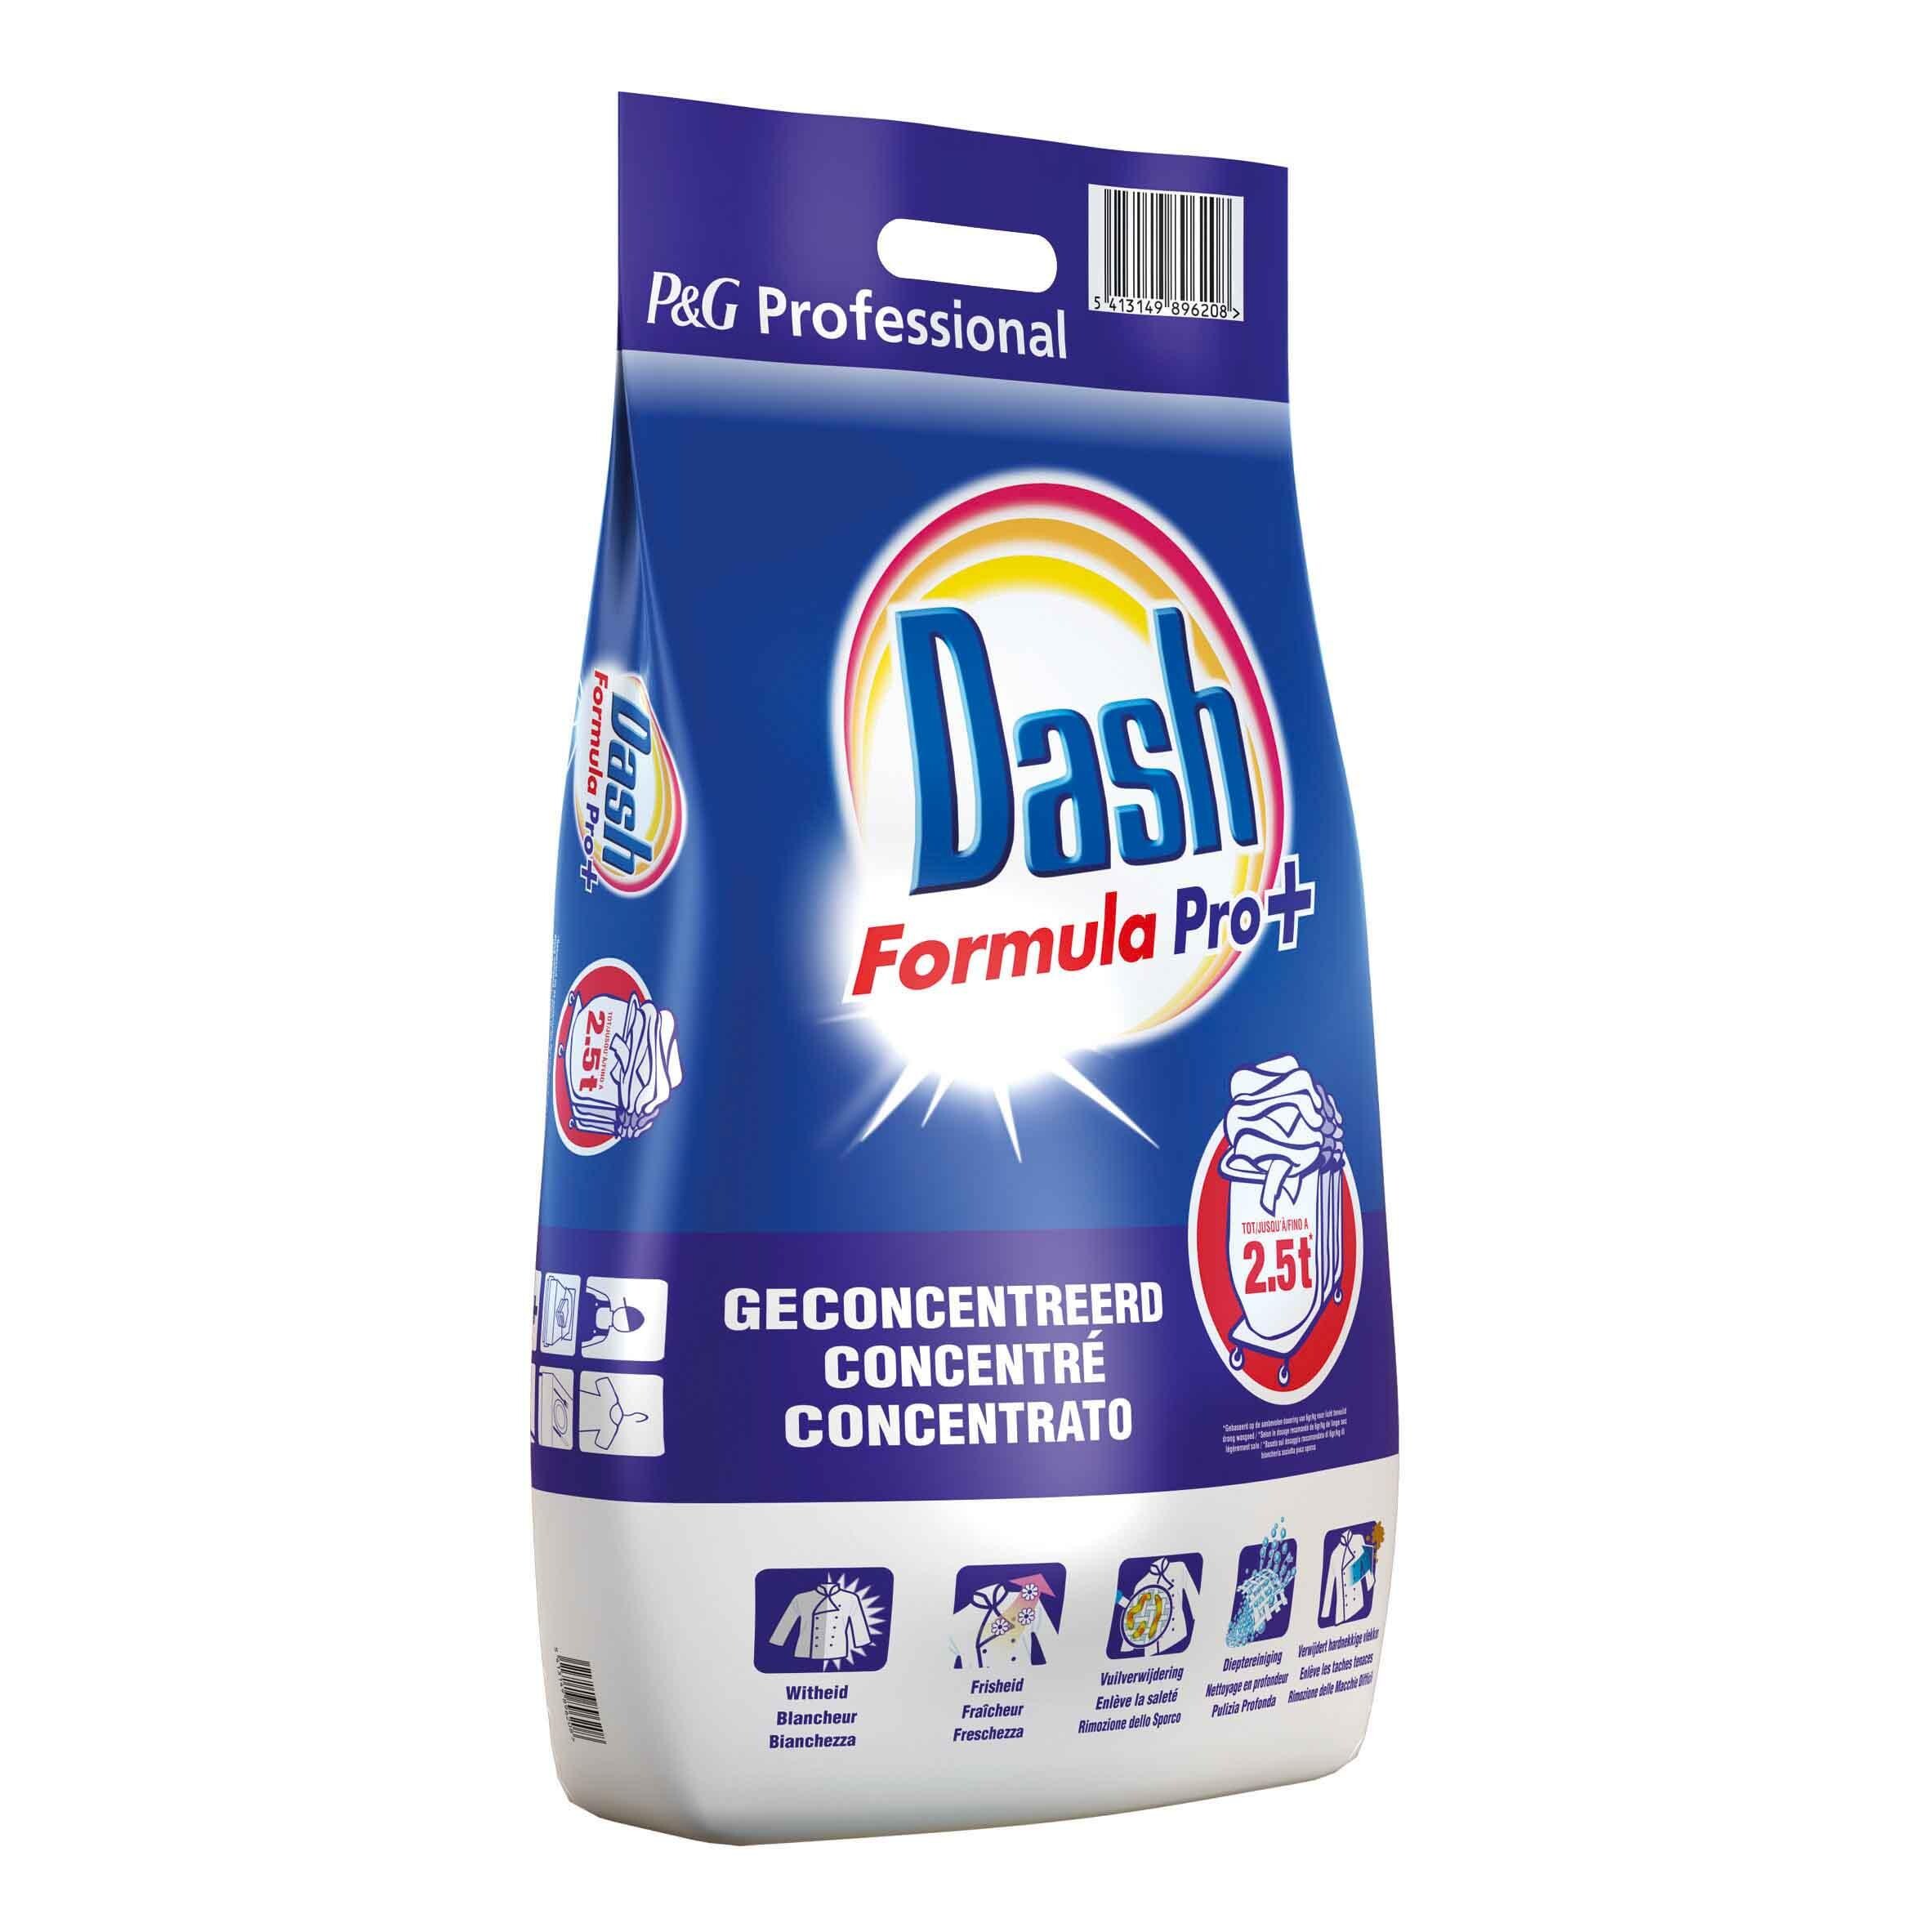 Dash formula pro+ 15kg waspoeder 150dos professional